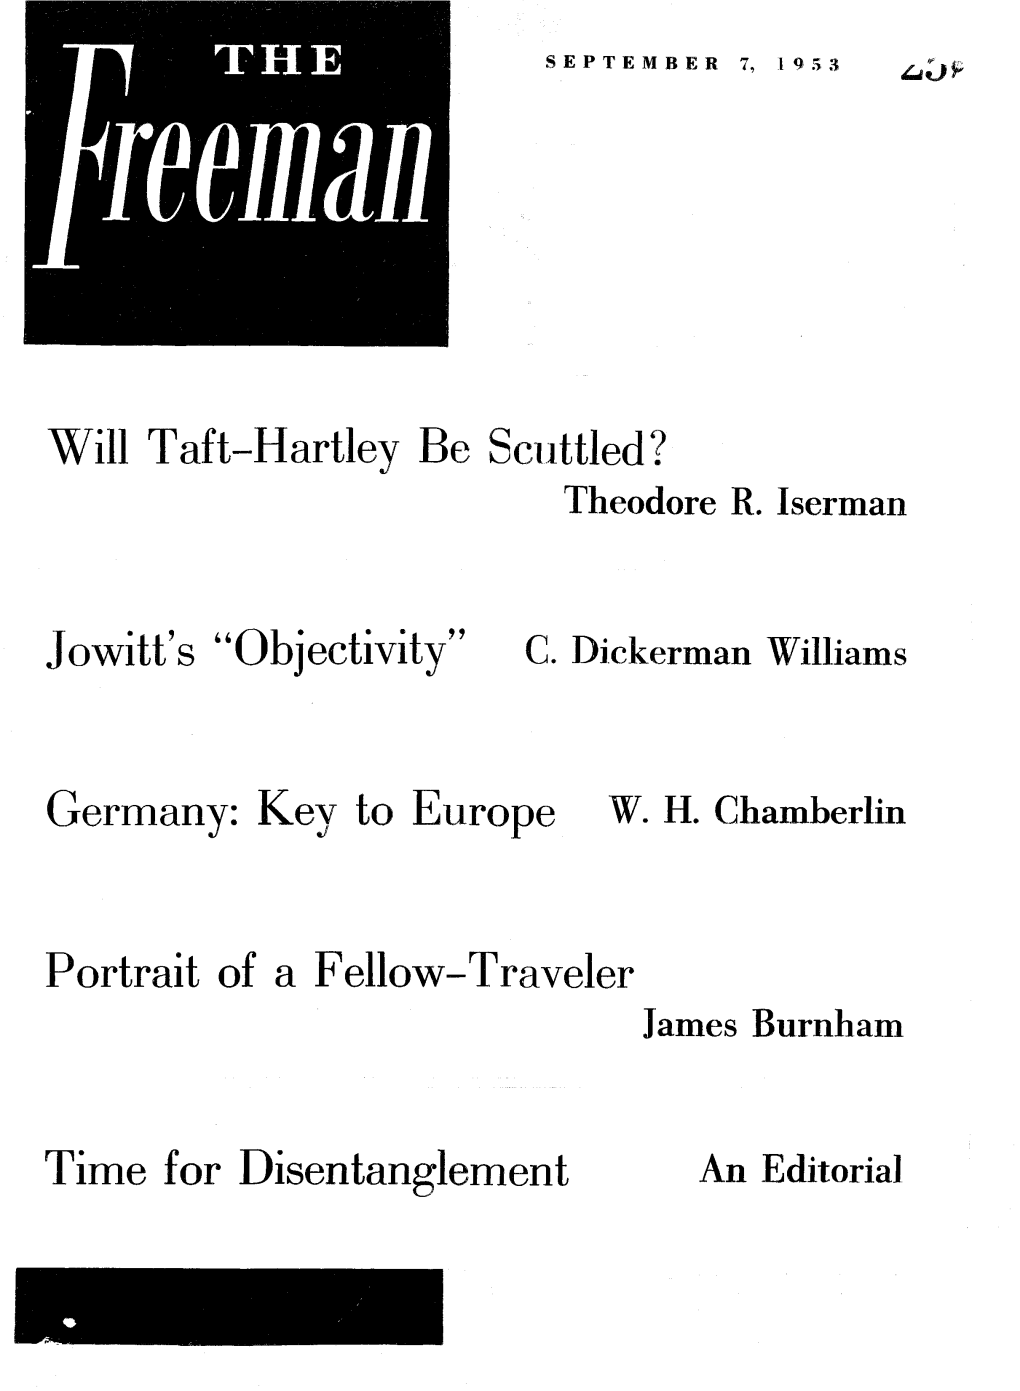 The Freeman September 1953